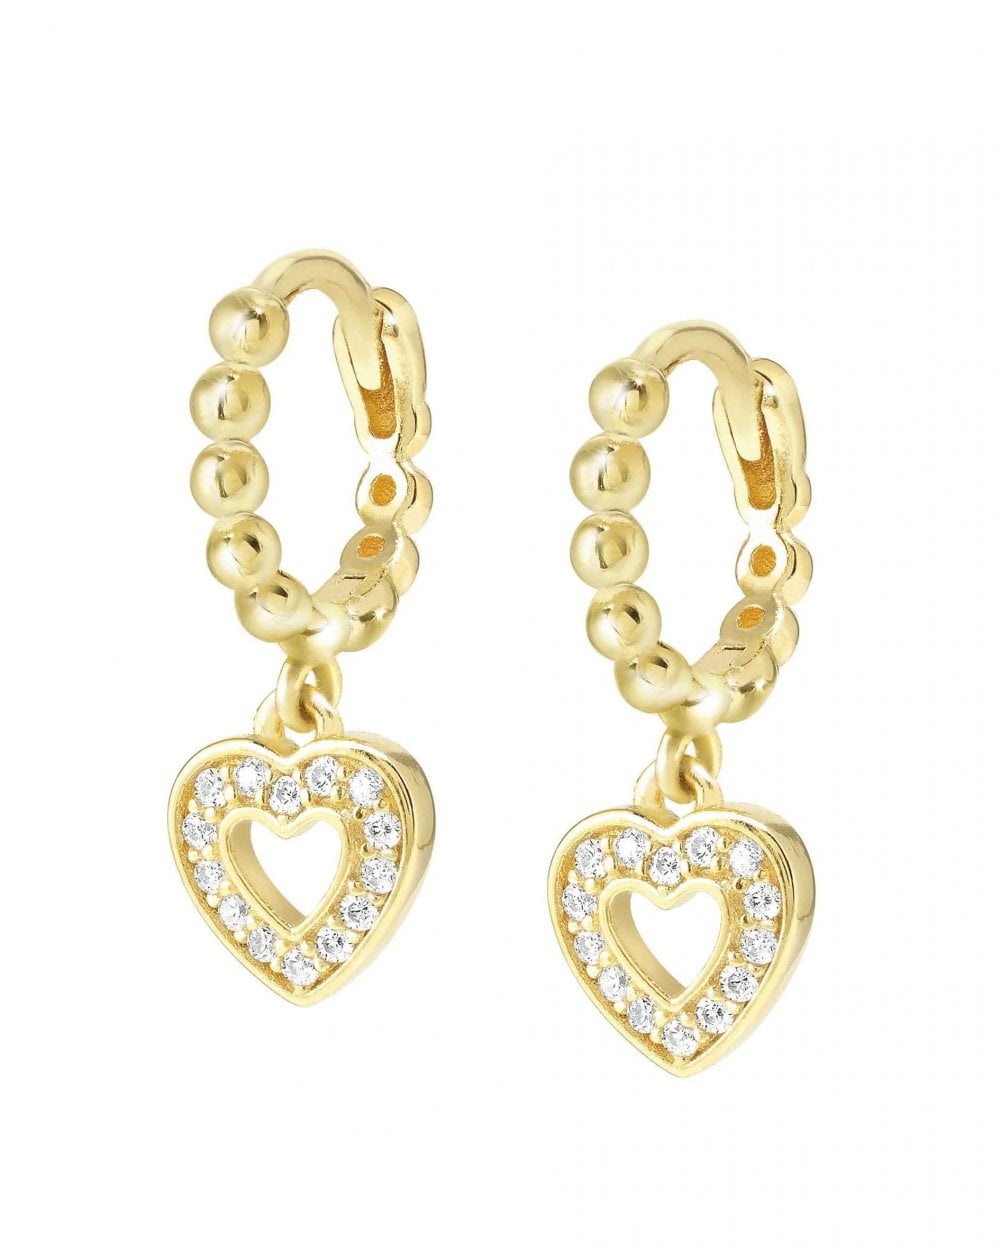 LOVECLOUD Earrings, Yellow Gold Heart